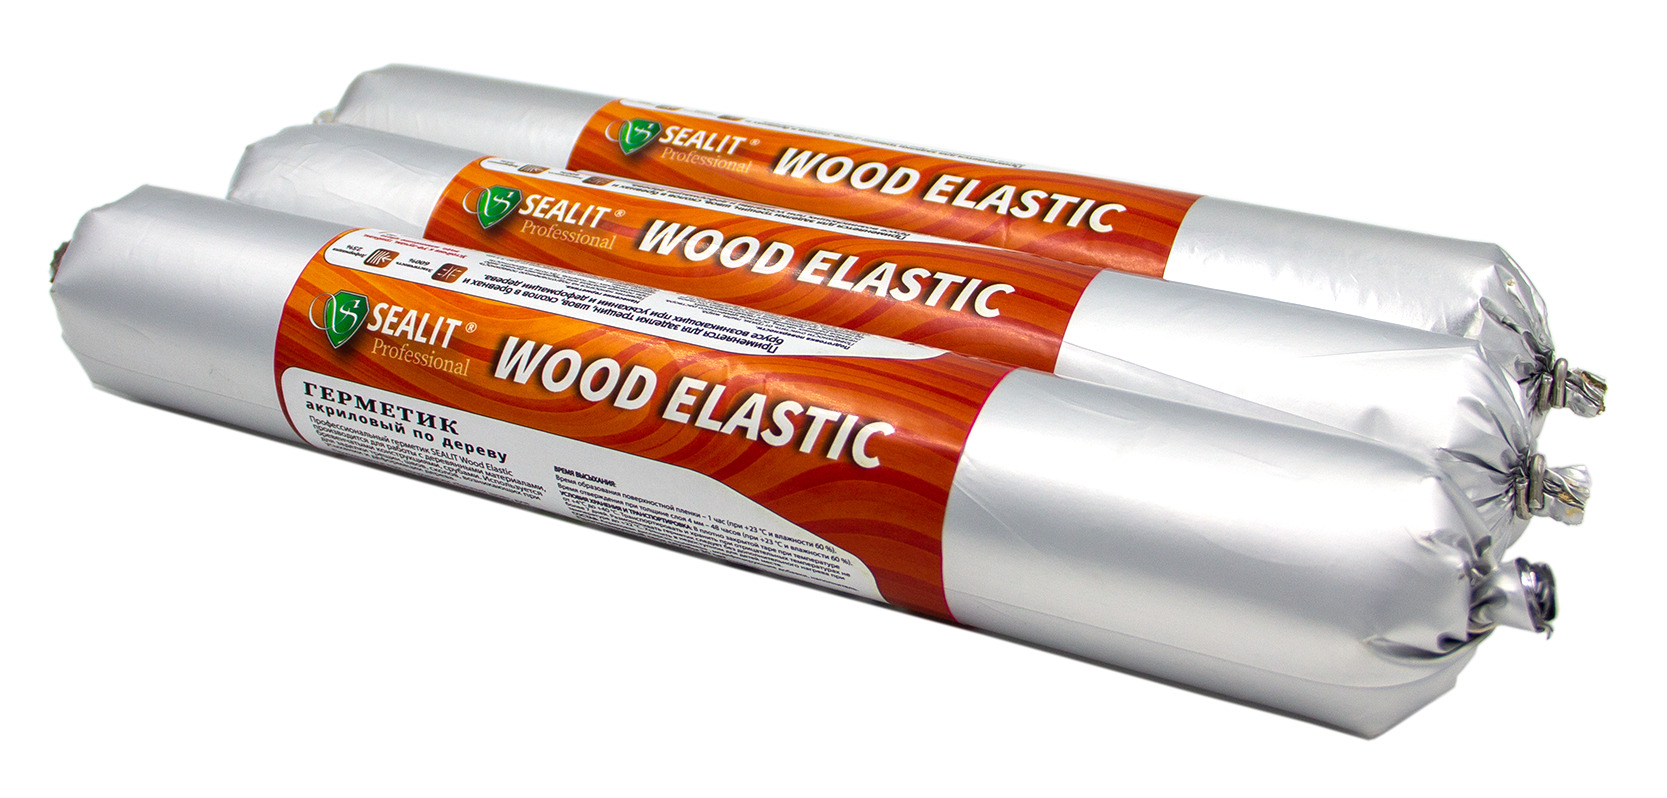 Герметик для дерева акриловый Sealit Wood Elastic, теплый шов, 900 гр, Медовый